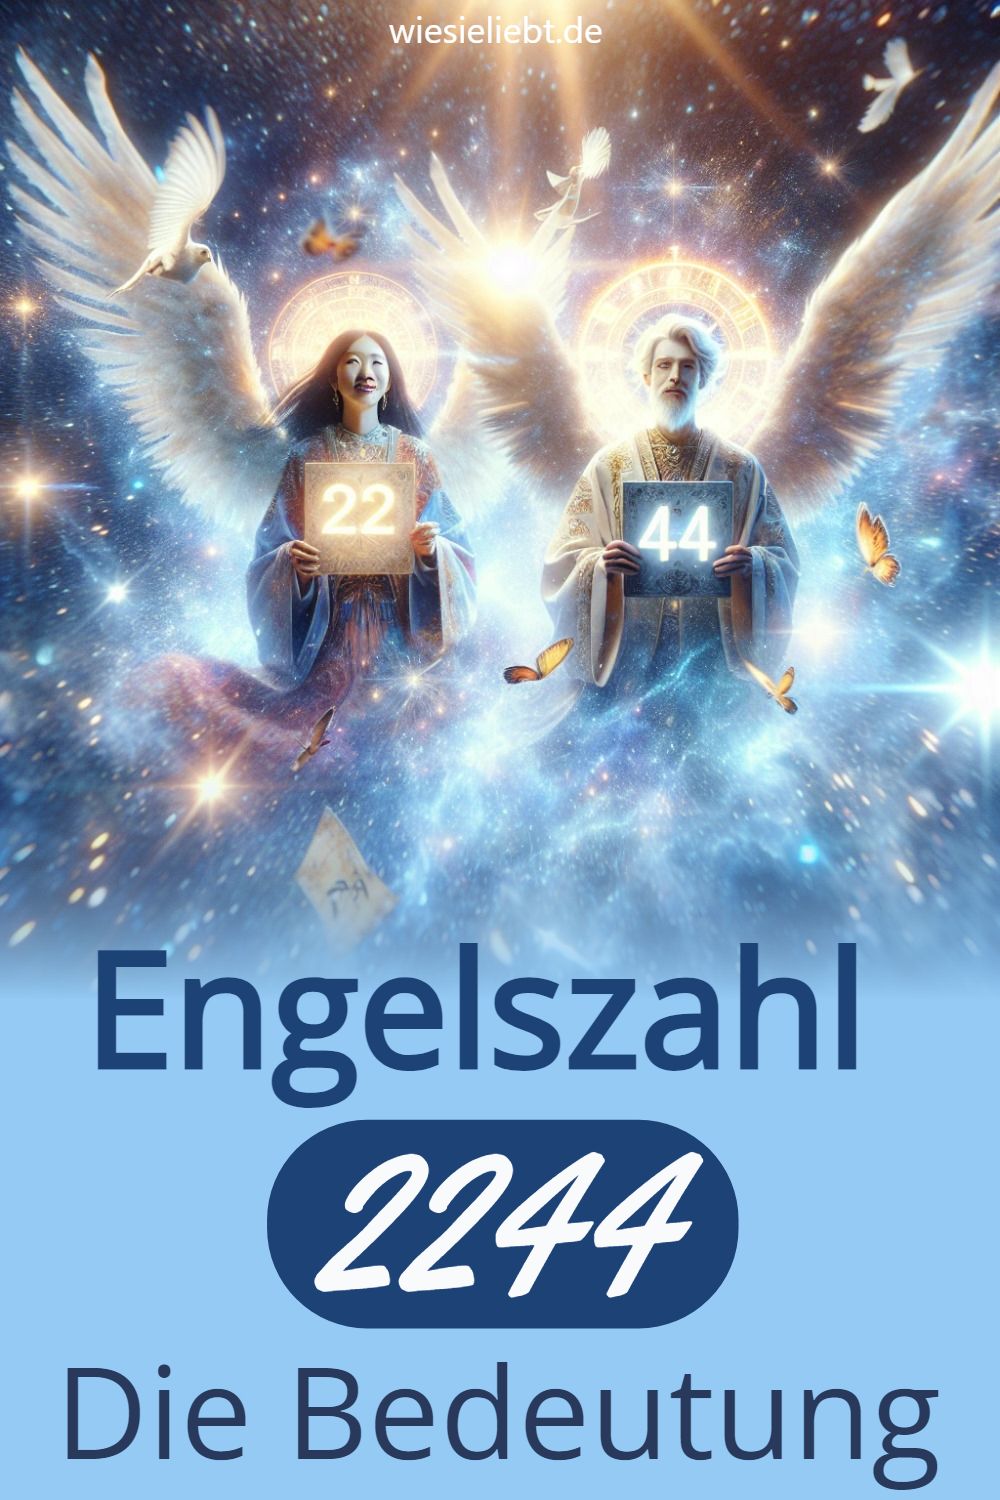 ENGELSZAHL 2244: Ein Zeichen des Universums?